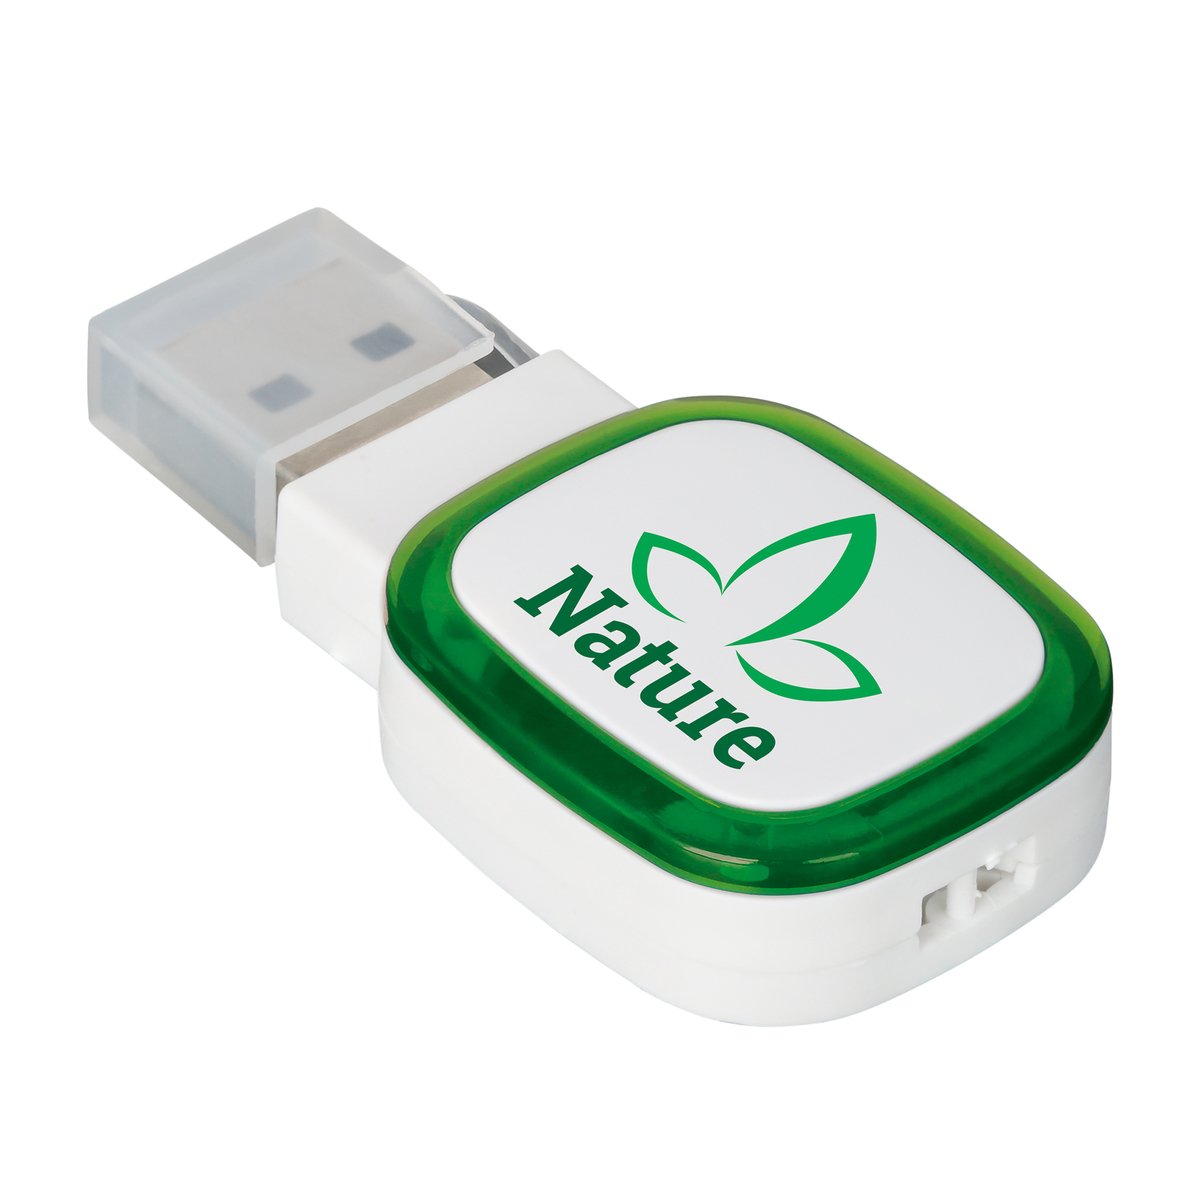 USB-Speicherstick COLLECTION 500 grün 16GB